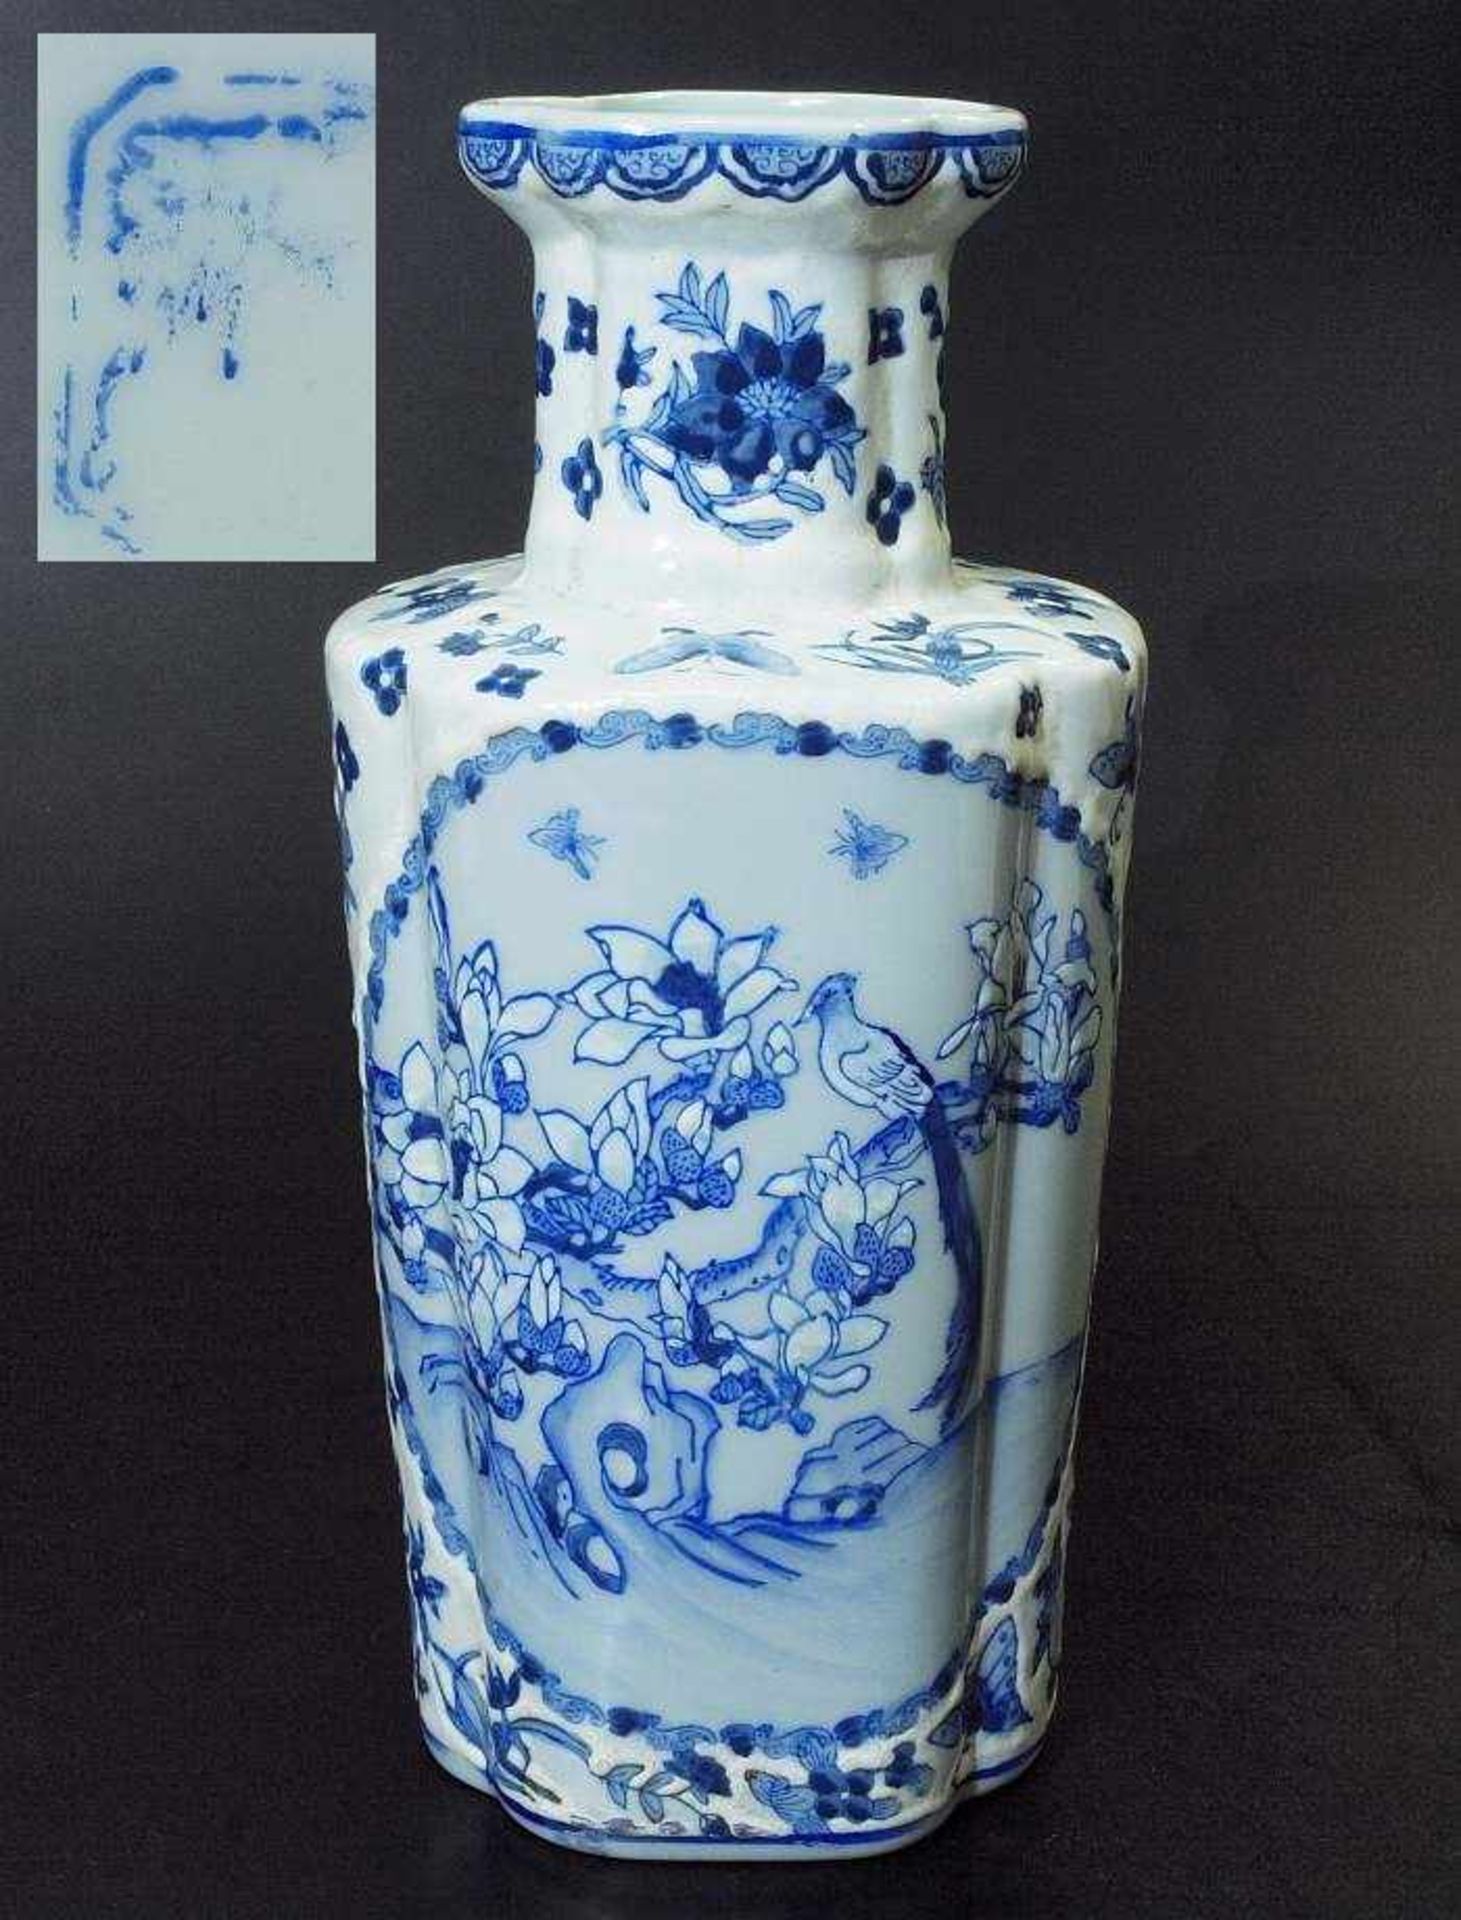 Vase. Vase. Asien, 19. Jahrhundert. Reliefartig ausgearbeitetes florales Dekor in blau-weiß,